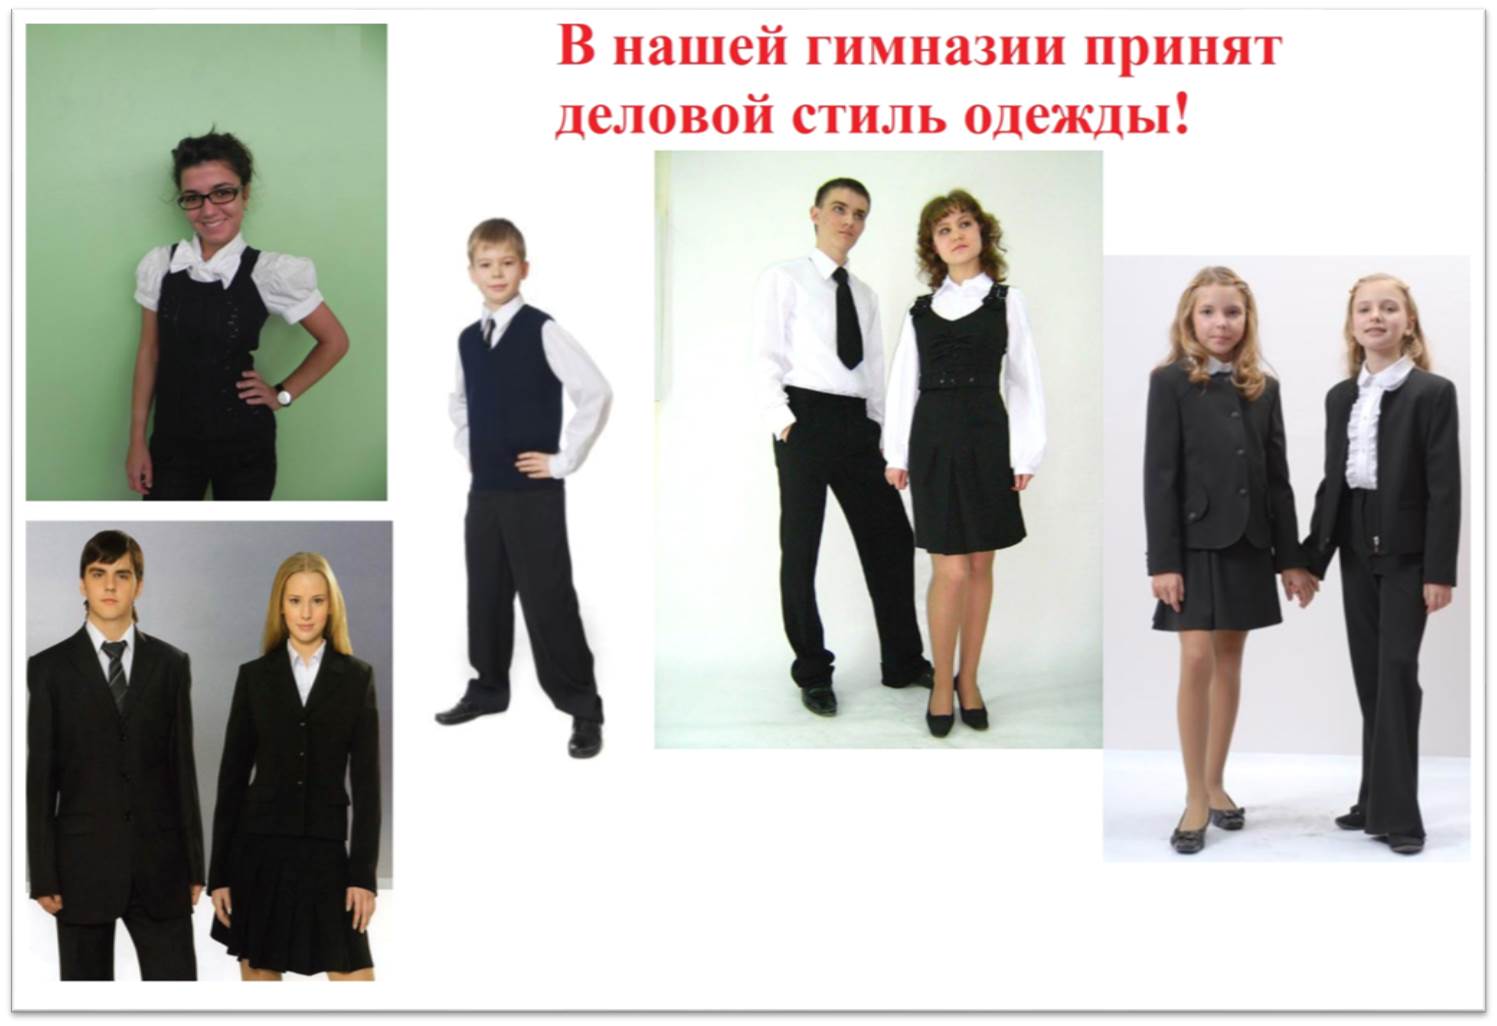 Положение о требованиях к одежде учащихся МБОУ гимназии имени Ф.К.Салманова